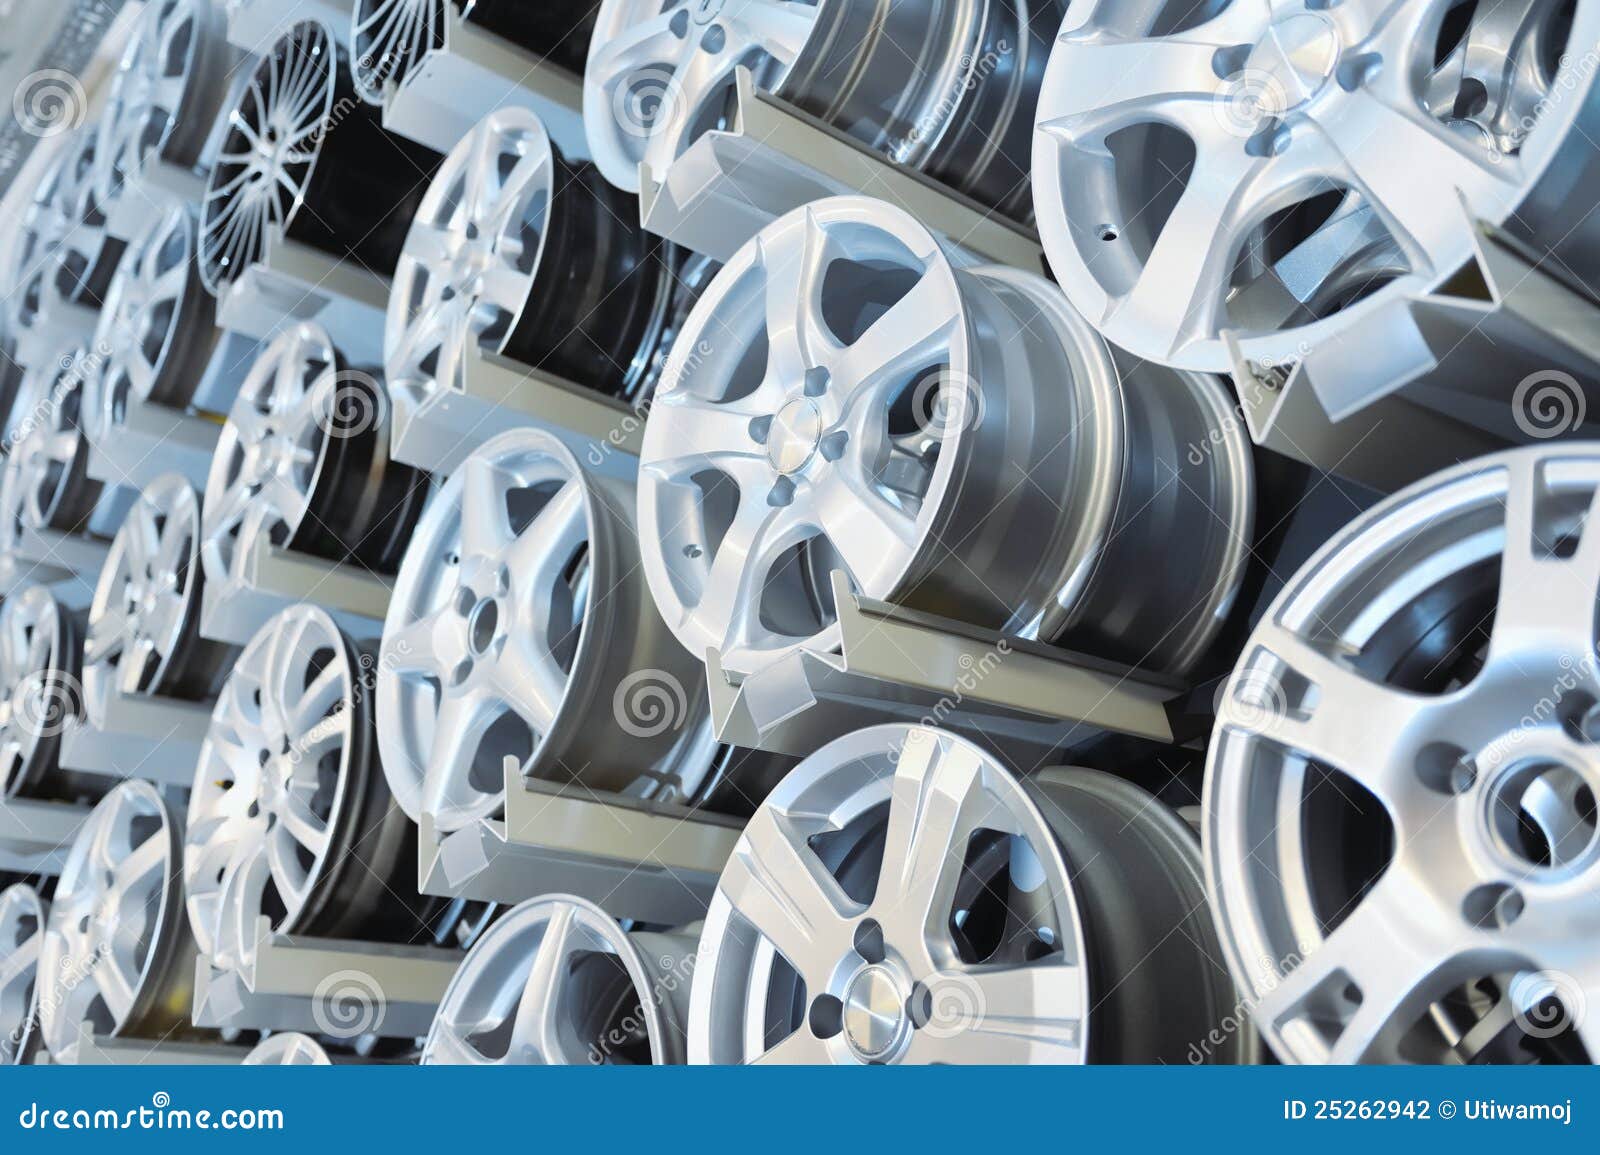 various alloy wheels